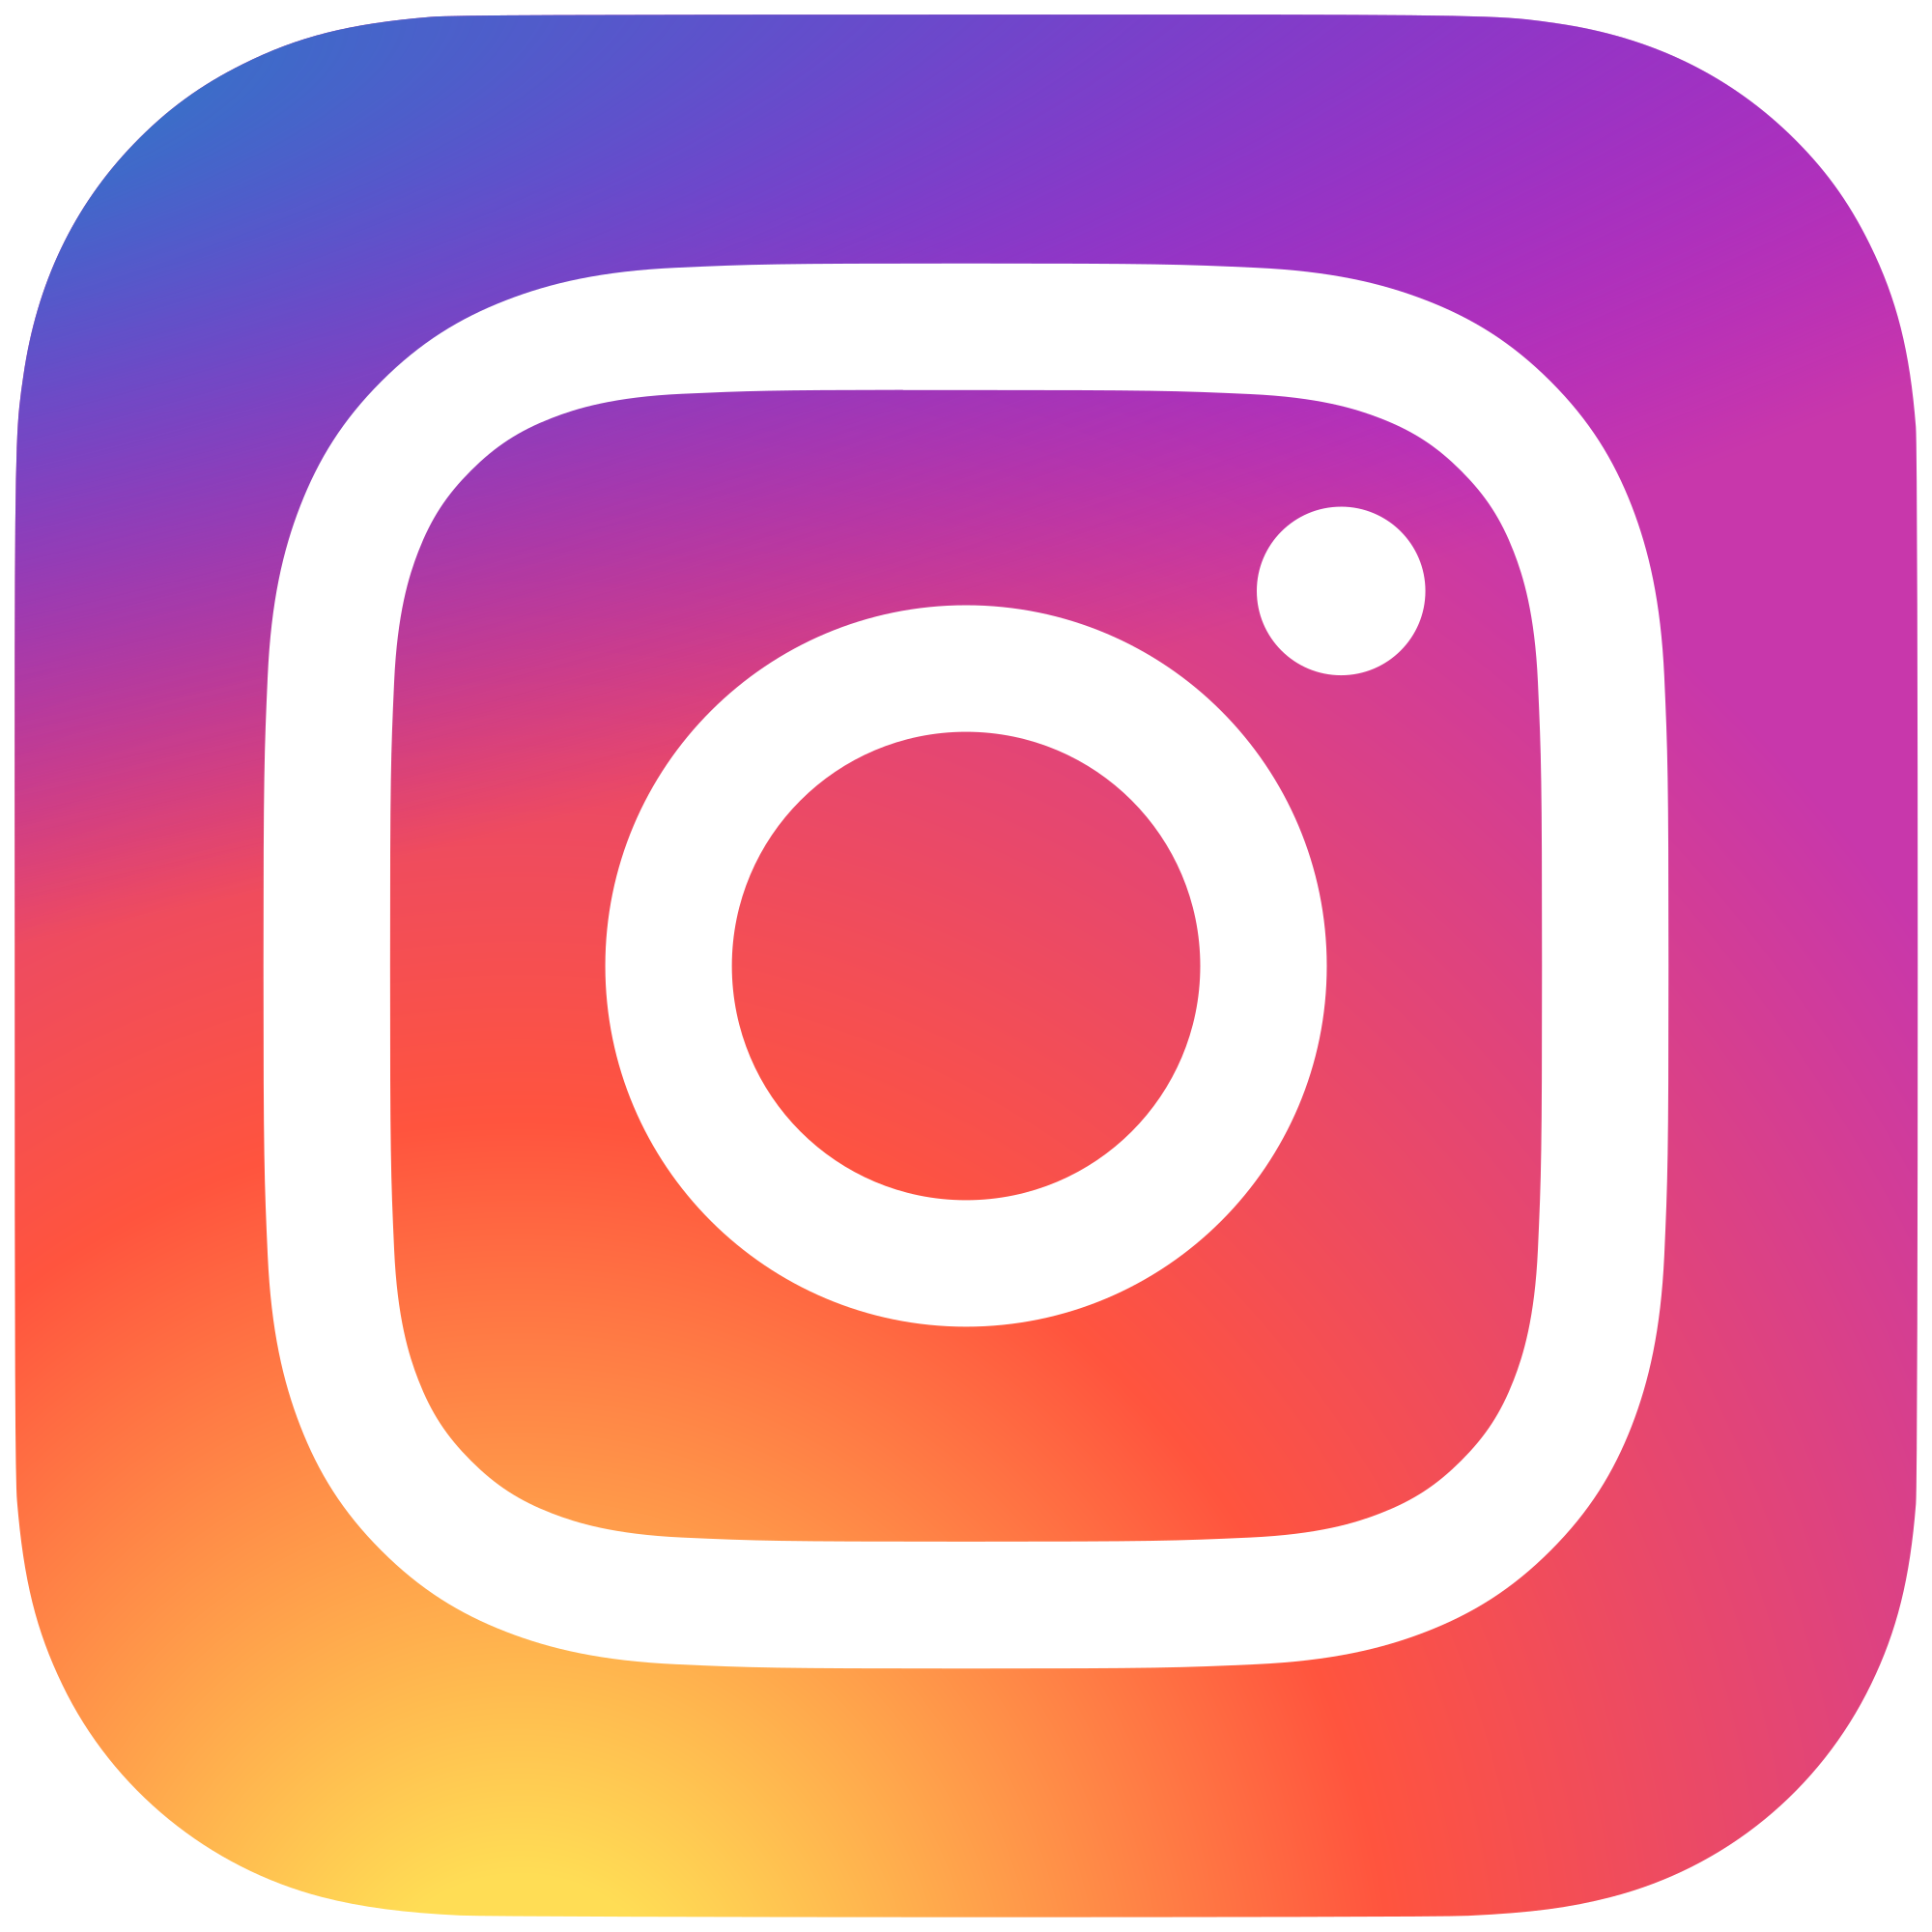 2000px-Instagram_logo_2016.svg.png